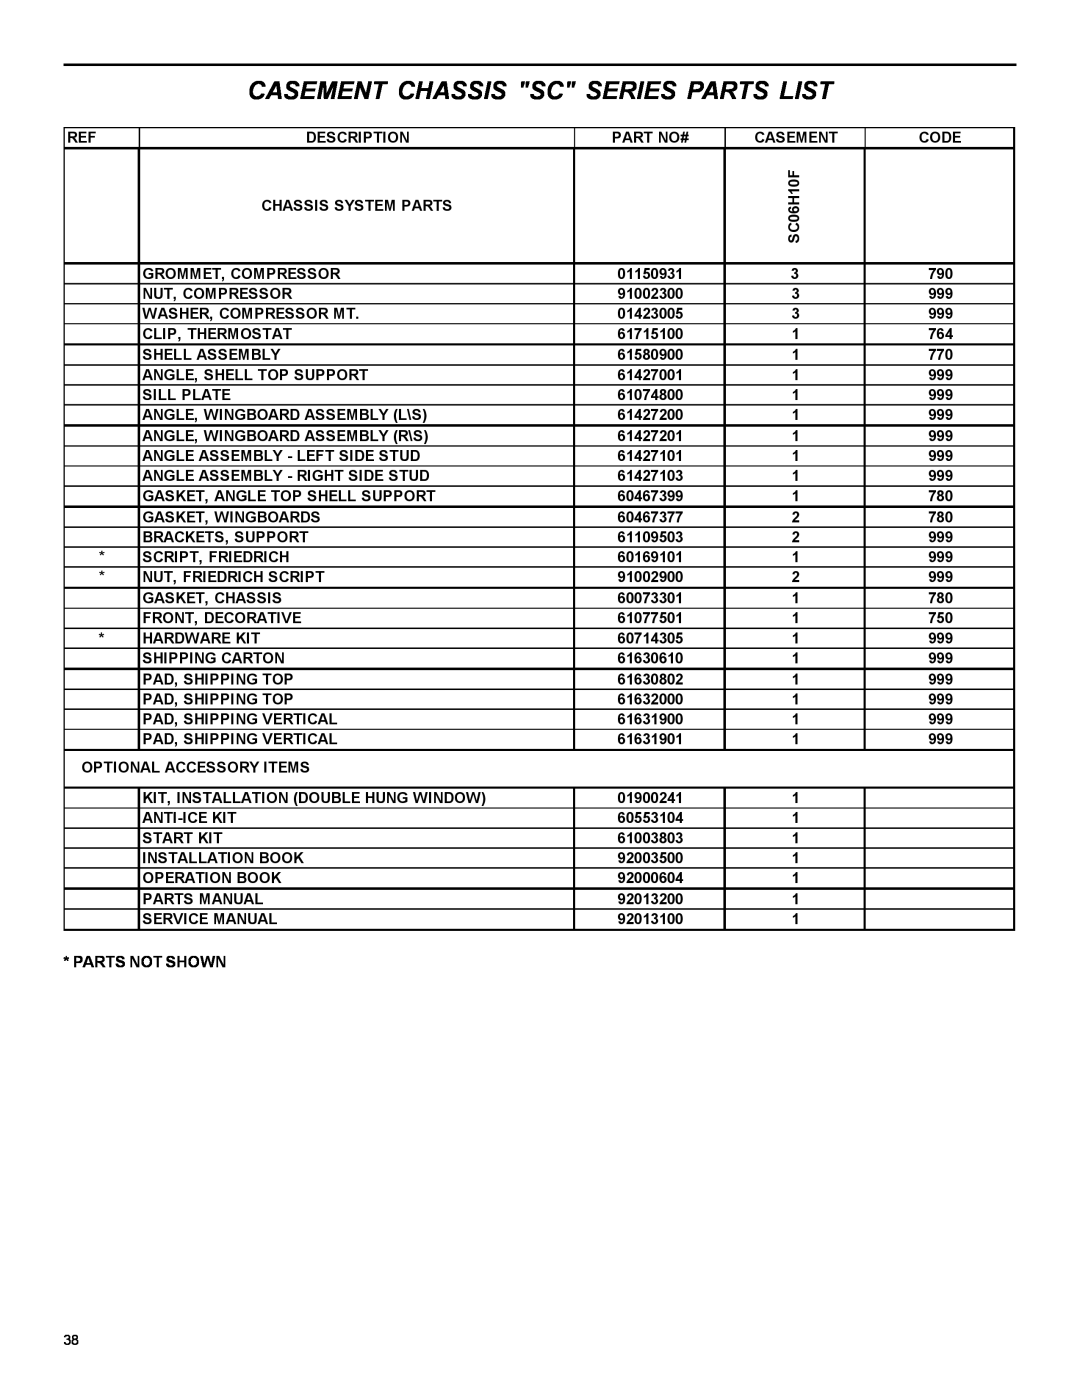 Friedrich 2004 manual Casement Chassis Sc Series Parts List, Description 